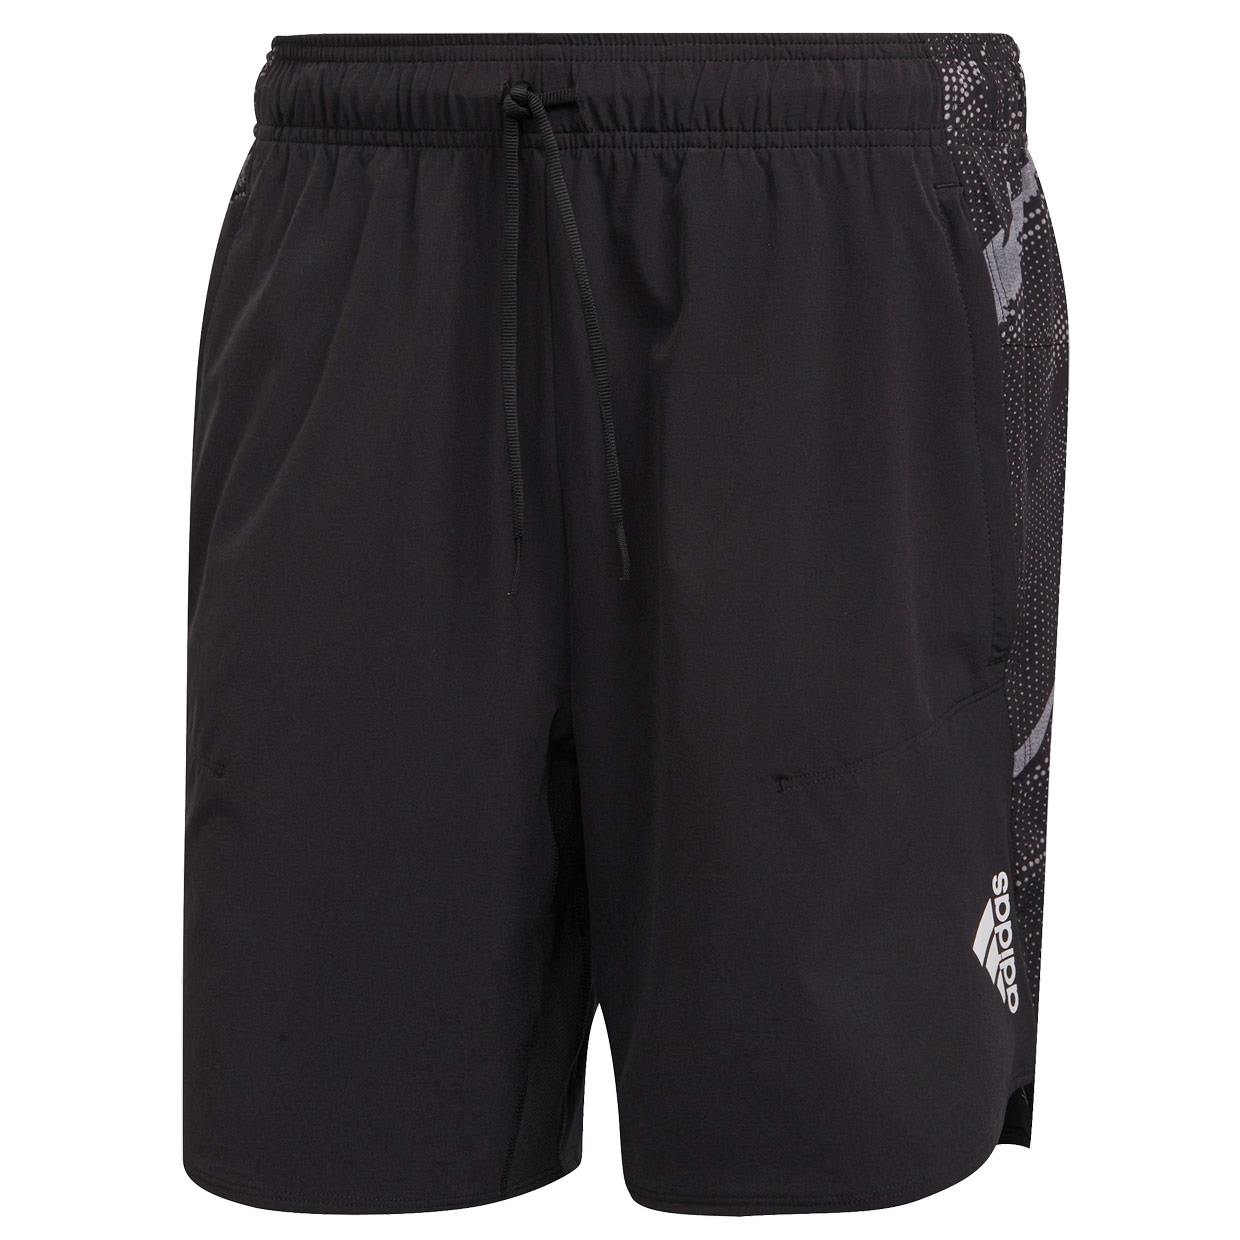 Herren Sporthose Designed for Training Shorts